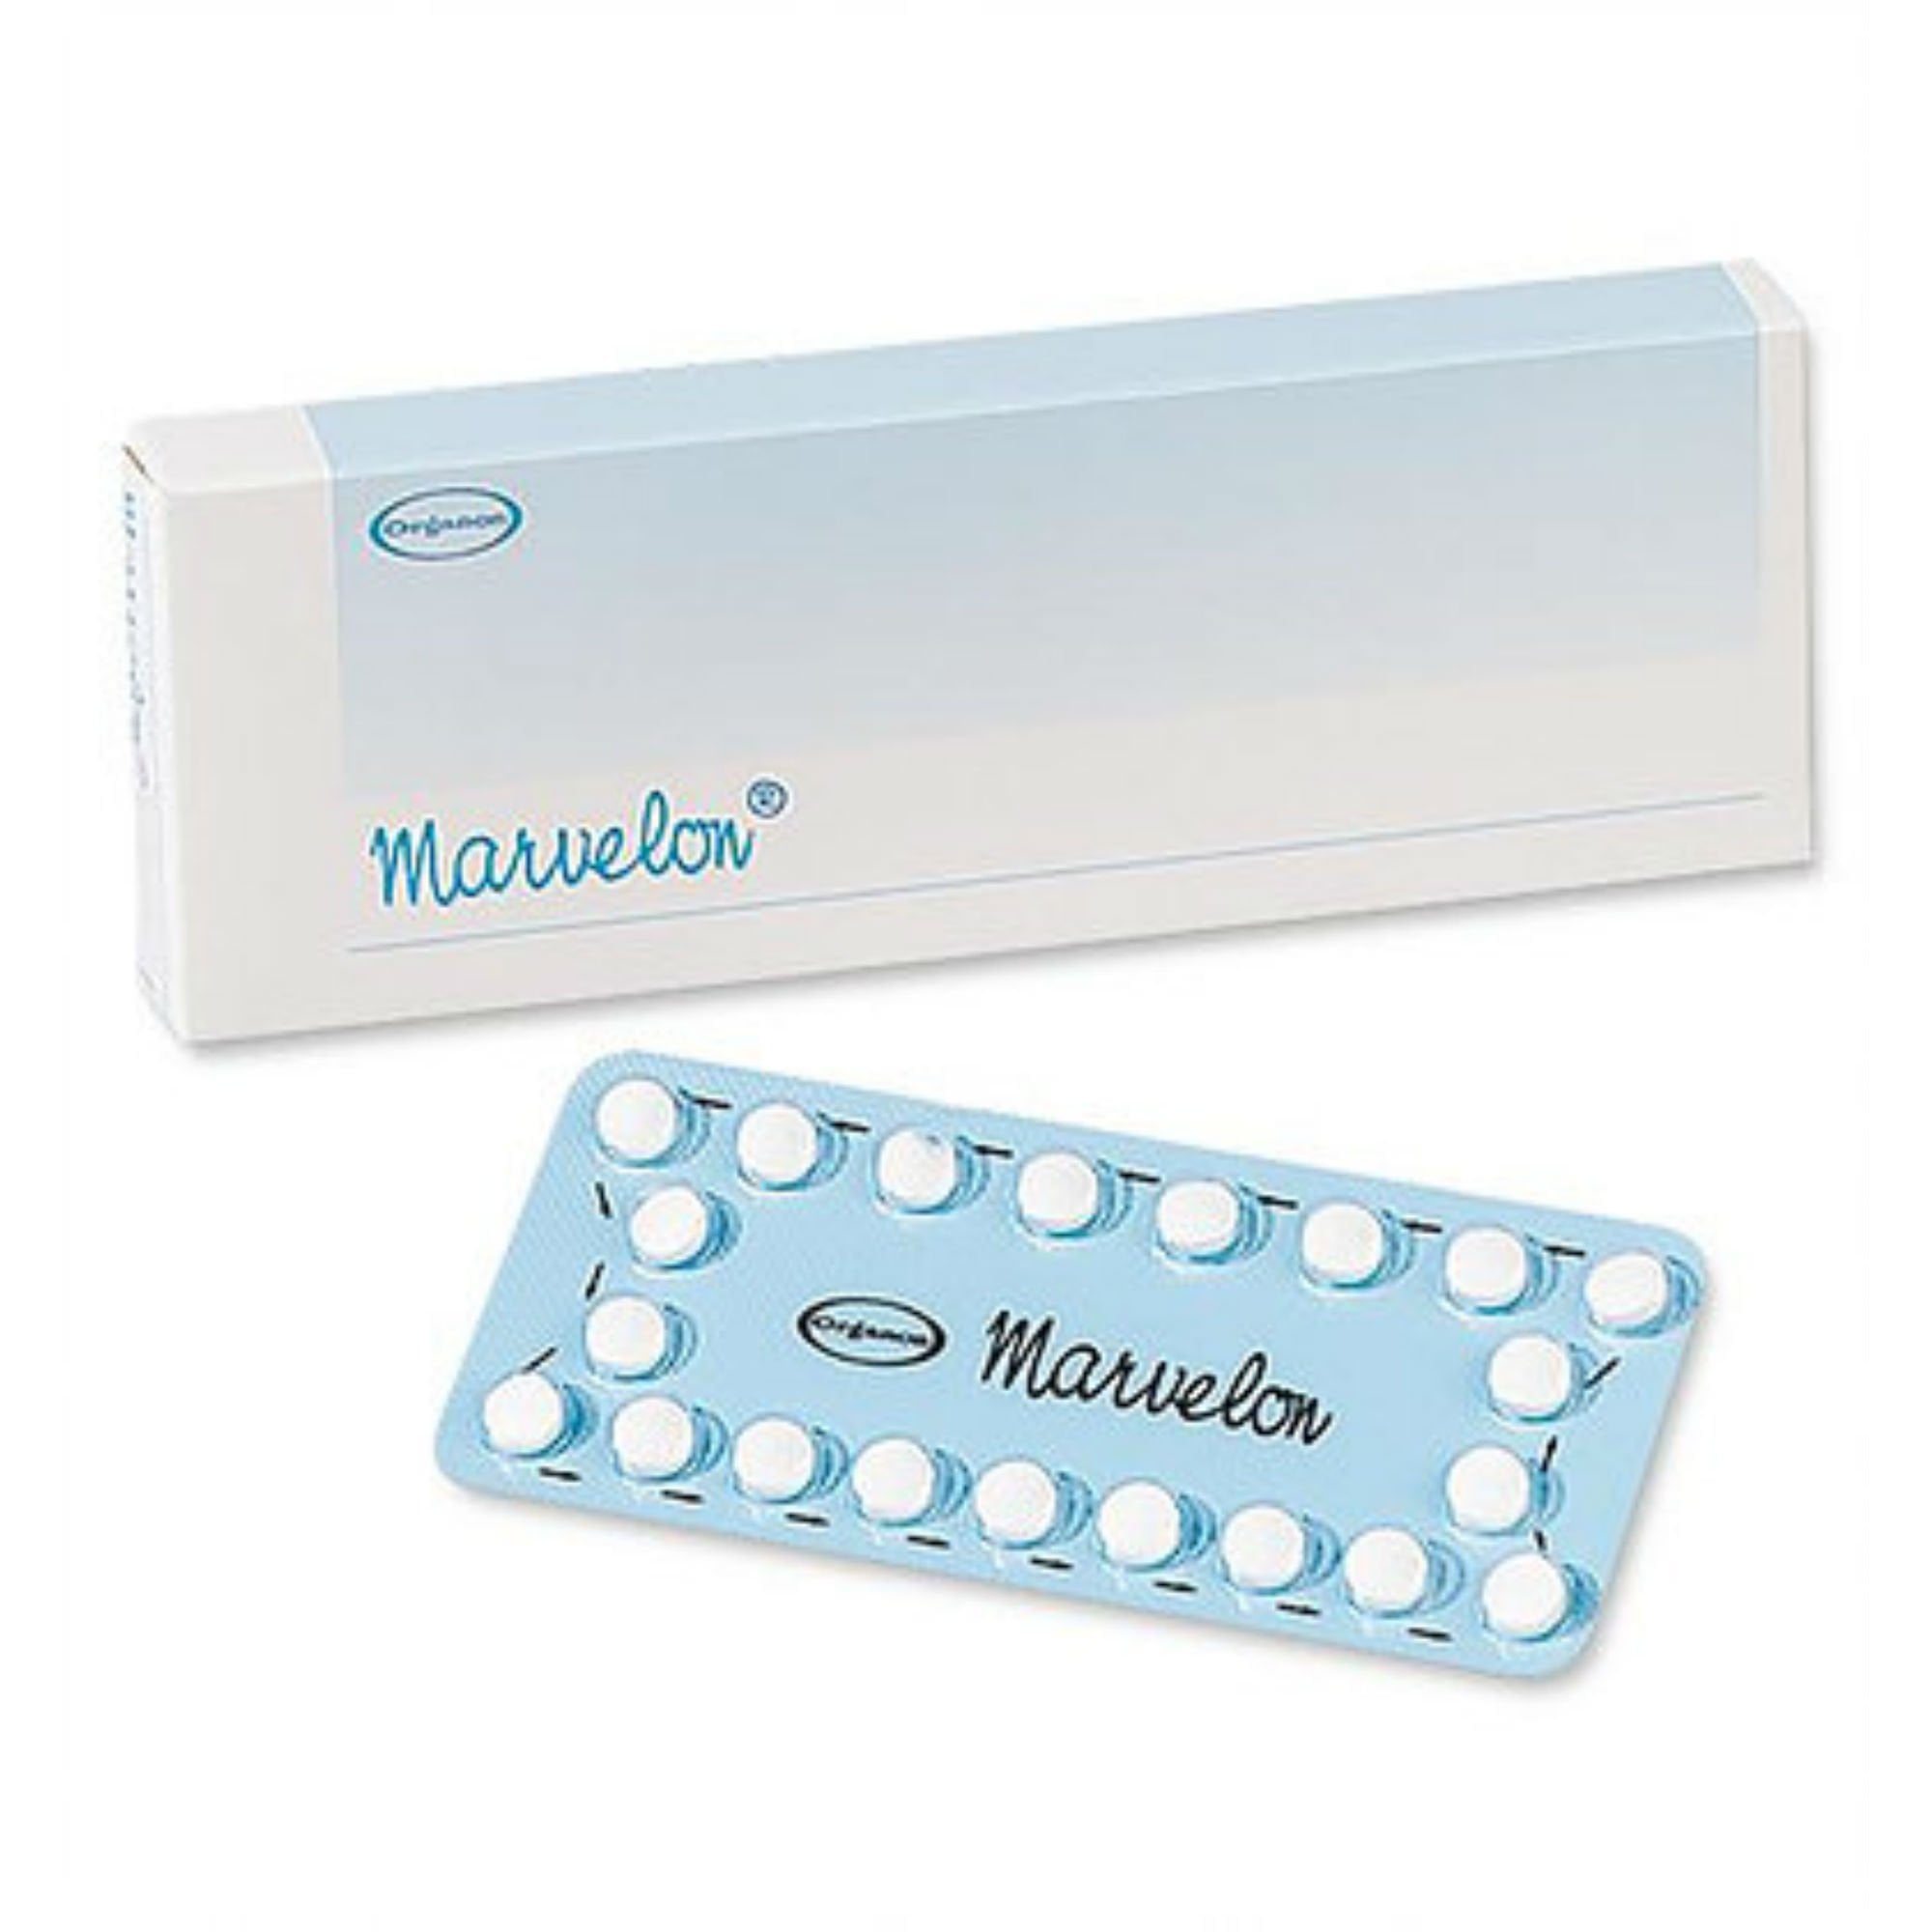 Vai kontracepcijas tabletes izraisa svara pieaugumu?